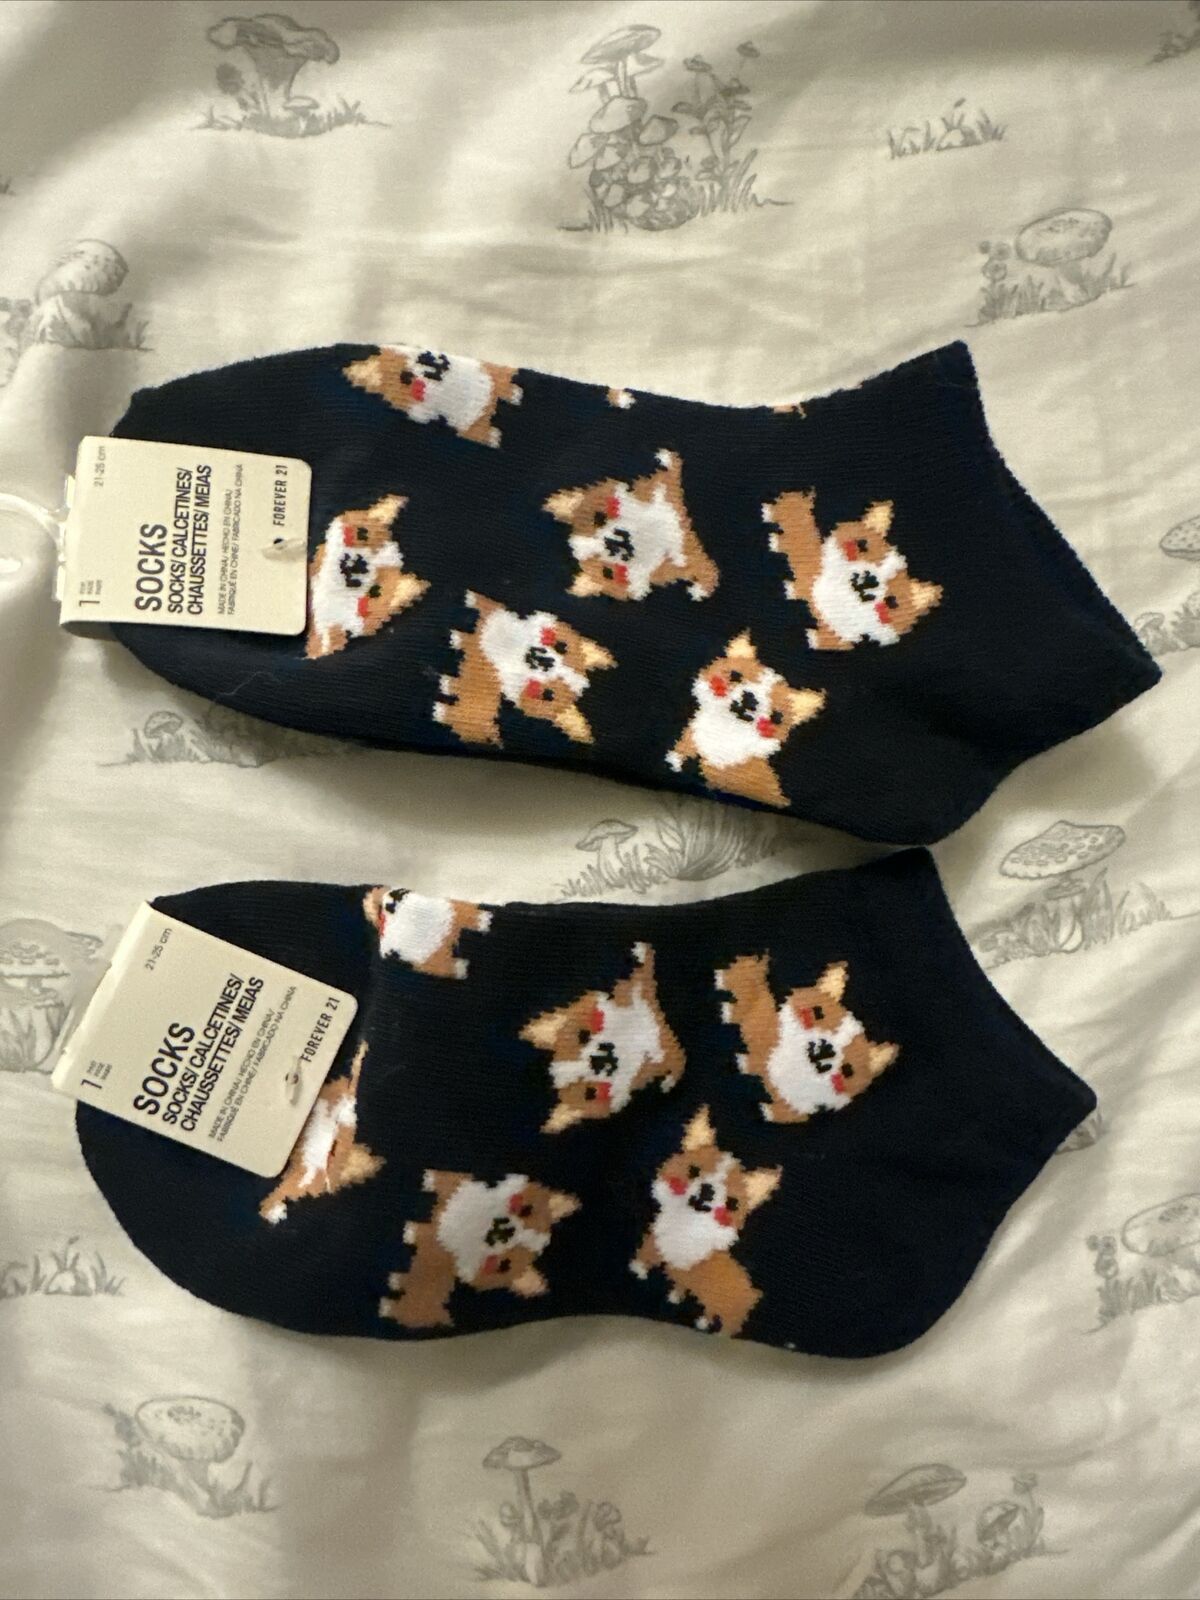 Pembroke Welsh Corgi Dog 2 Pair Ankle Socks, Women’s 21-25cm